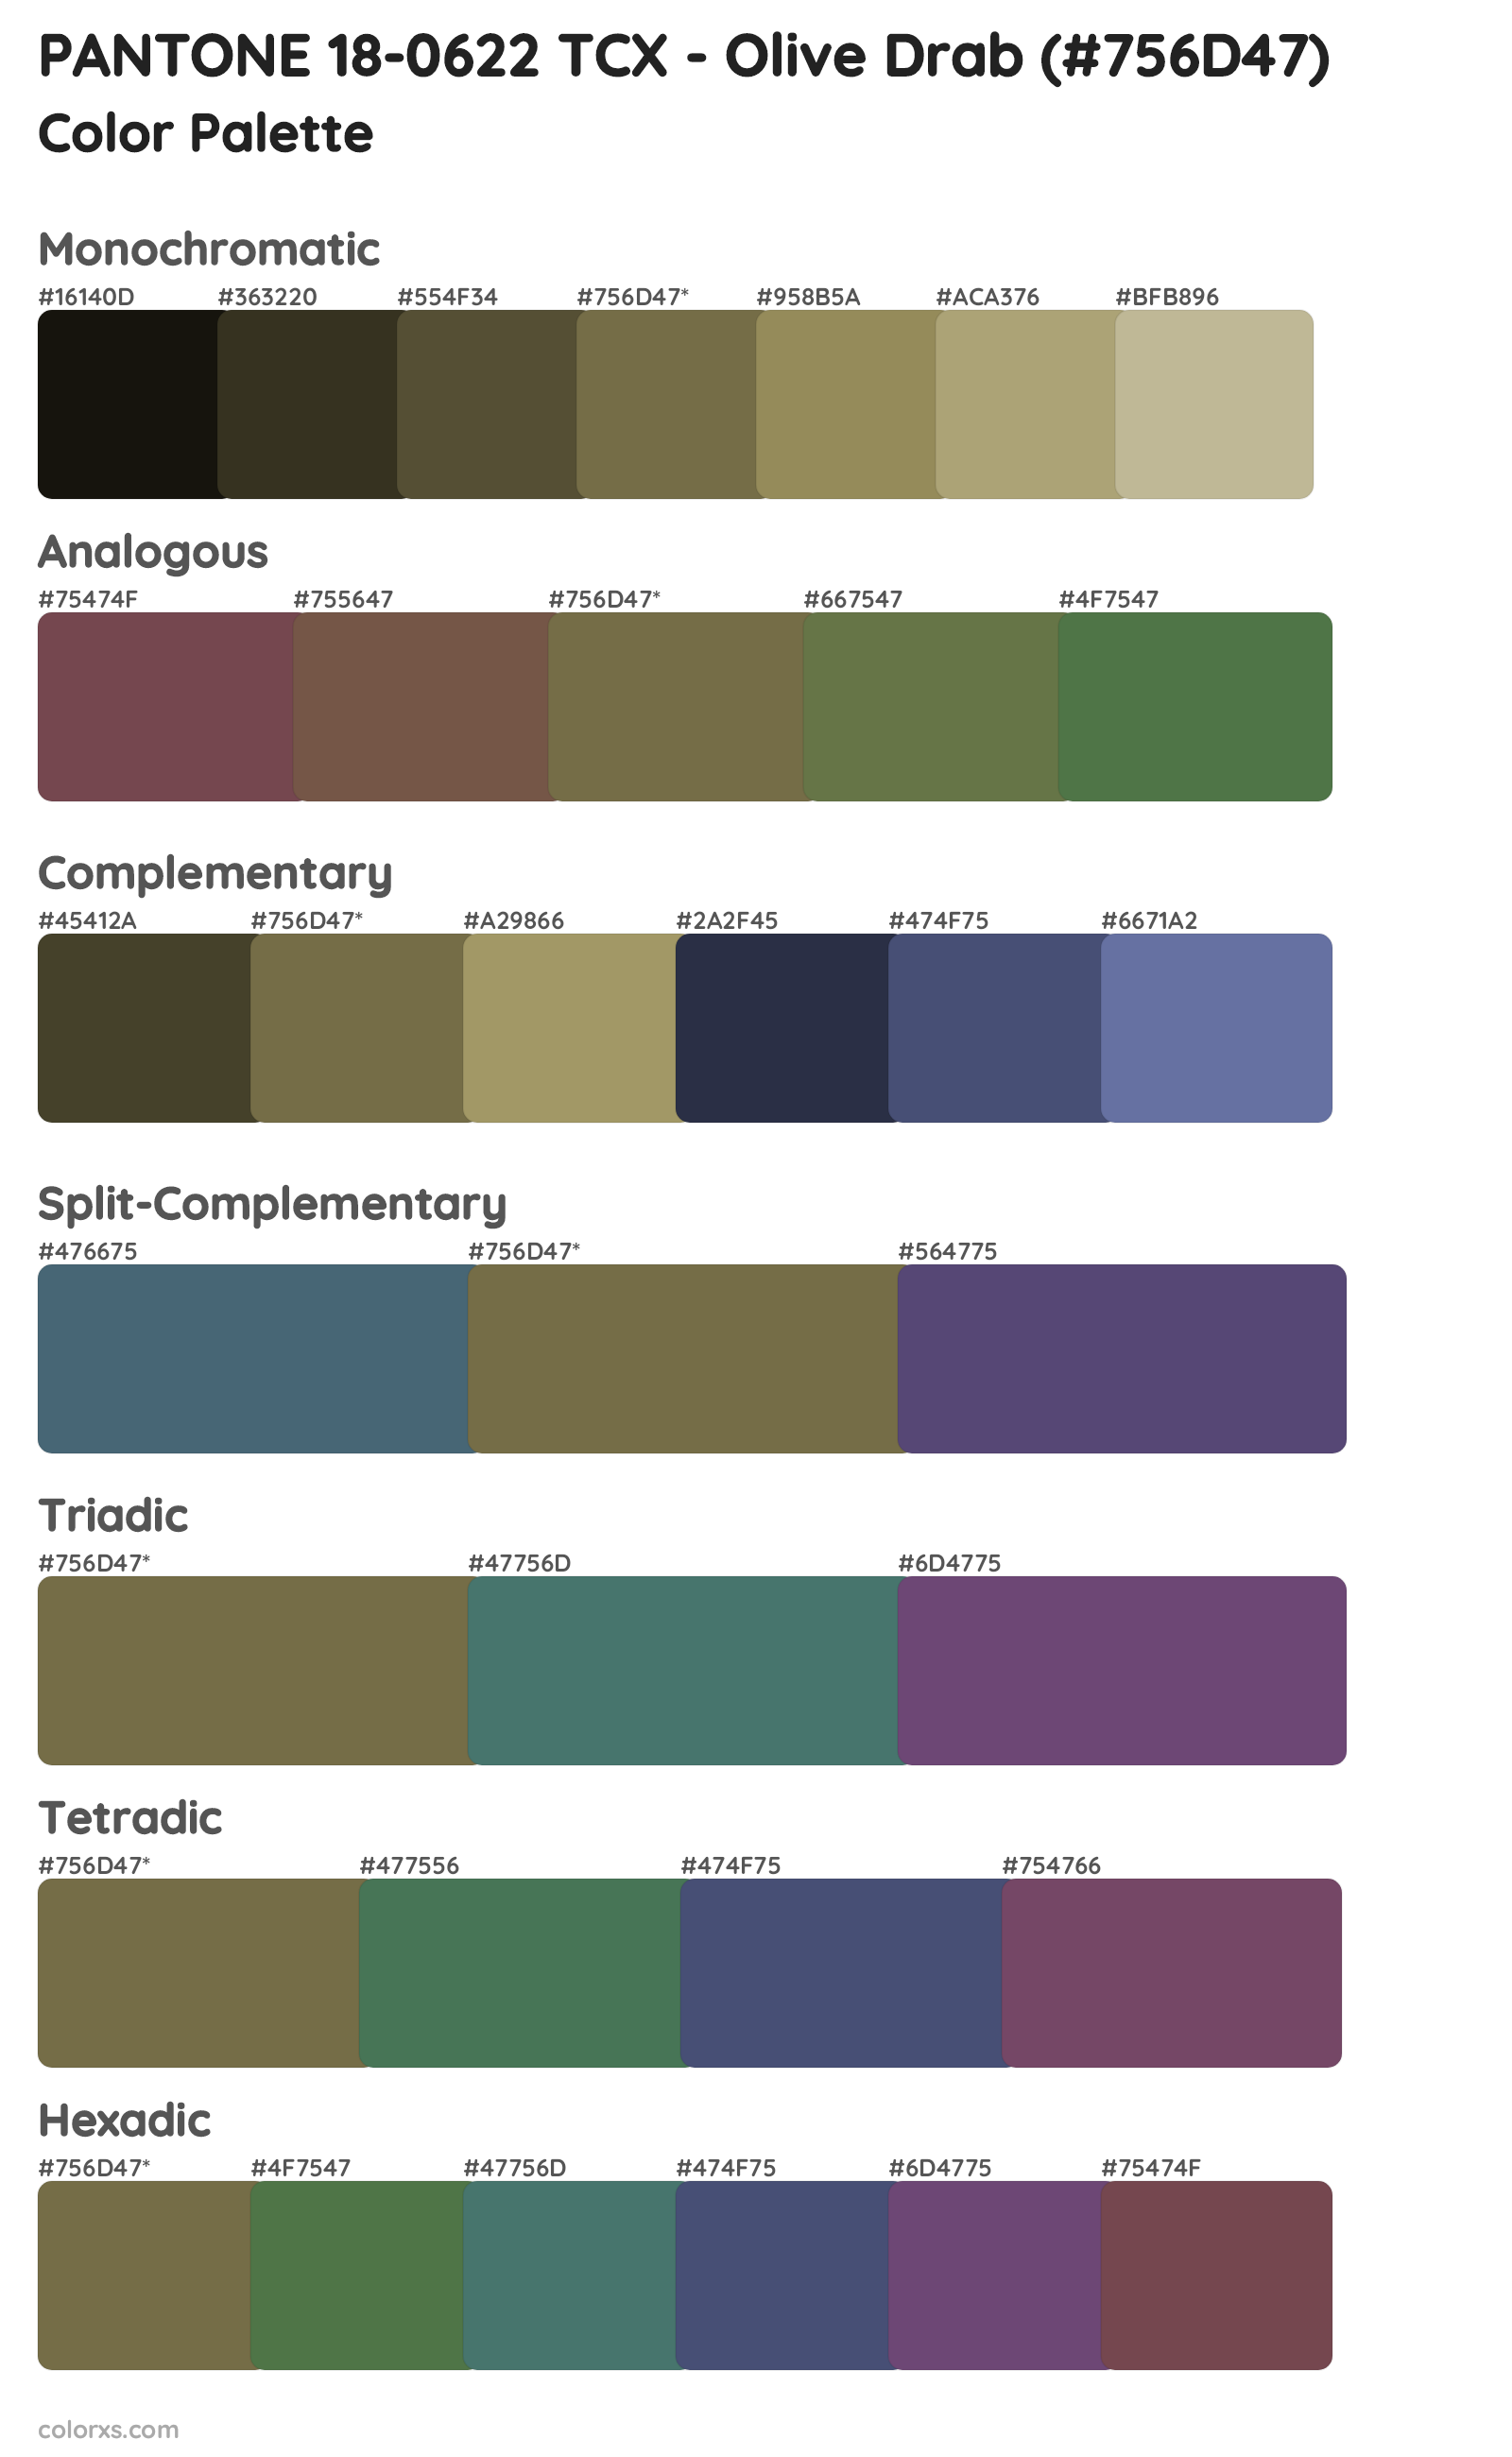 PANTONE 18-0622 TCX - Olive Drab Color Scheme Palettes